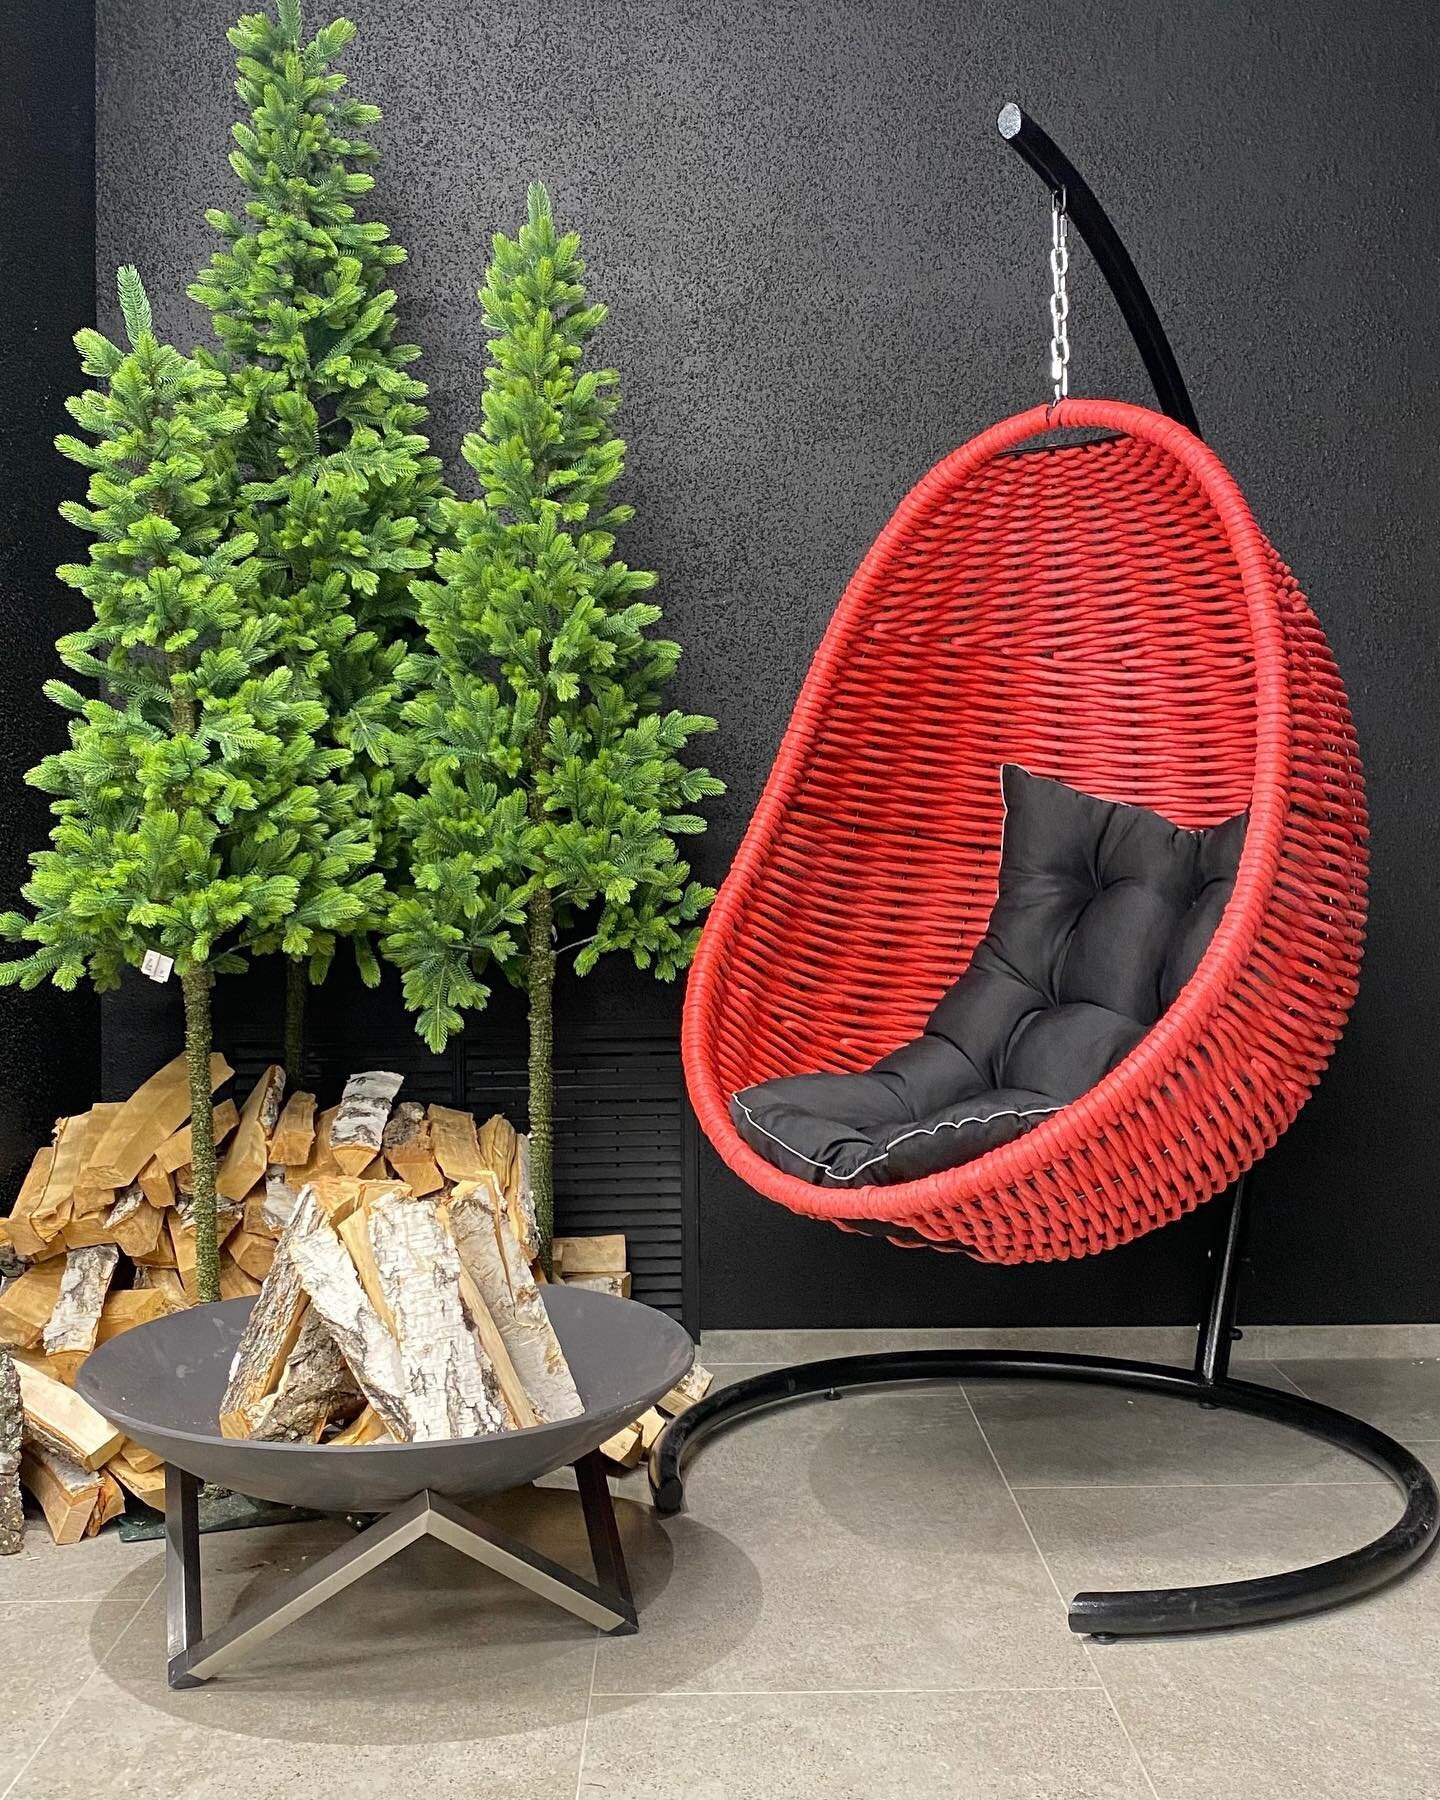 Подвесное плетеное кресло кокон красное (под заказ) для садового участка, загородной террасы или бизнеса на улице - фотография № 2